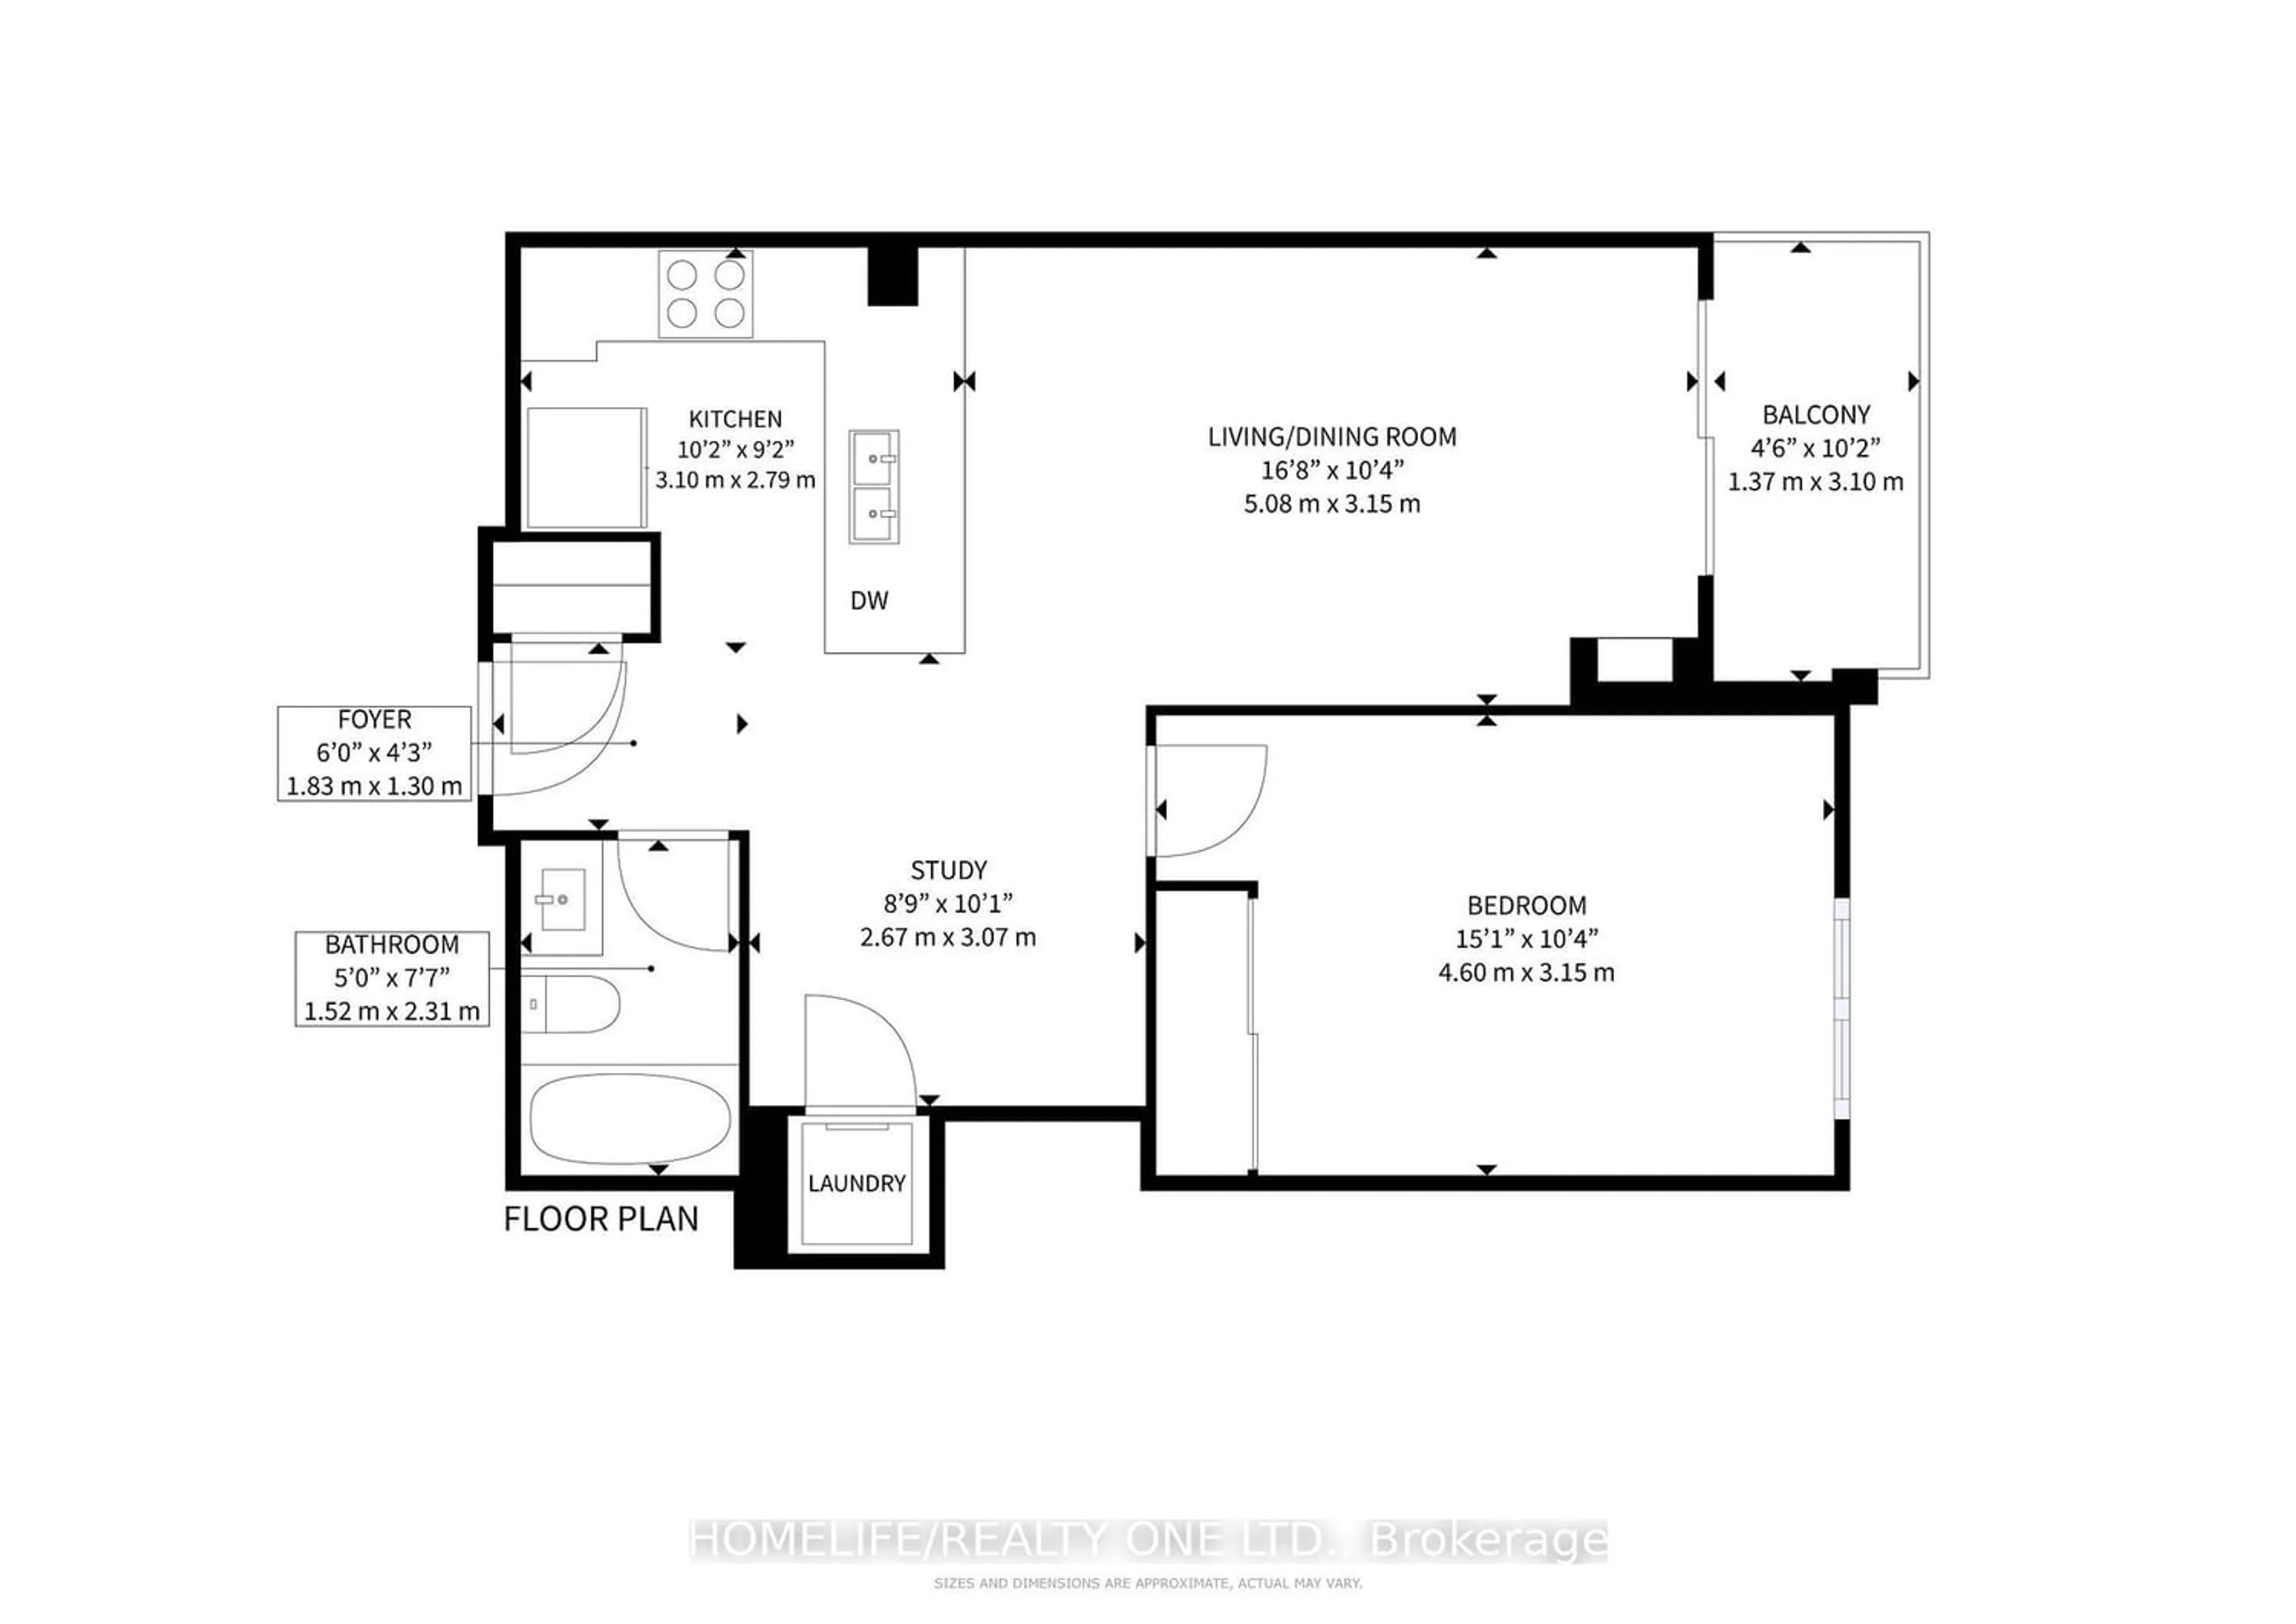 Floor plan for 816 Lansdowne Ave #212, Toronto Ontario M6H 4K6